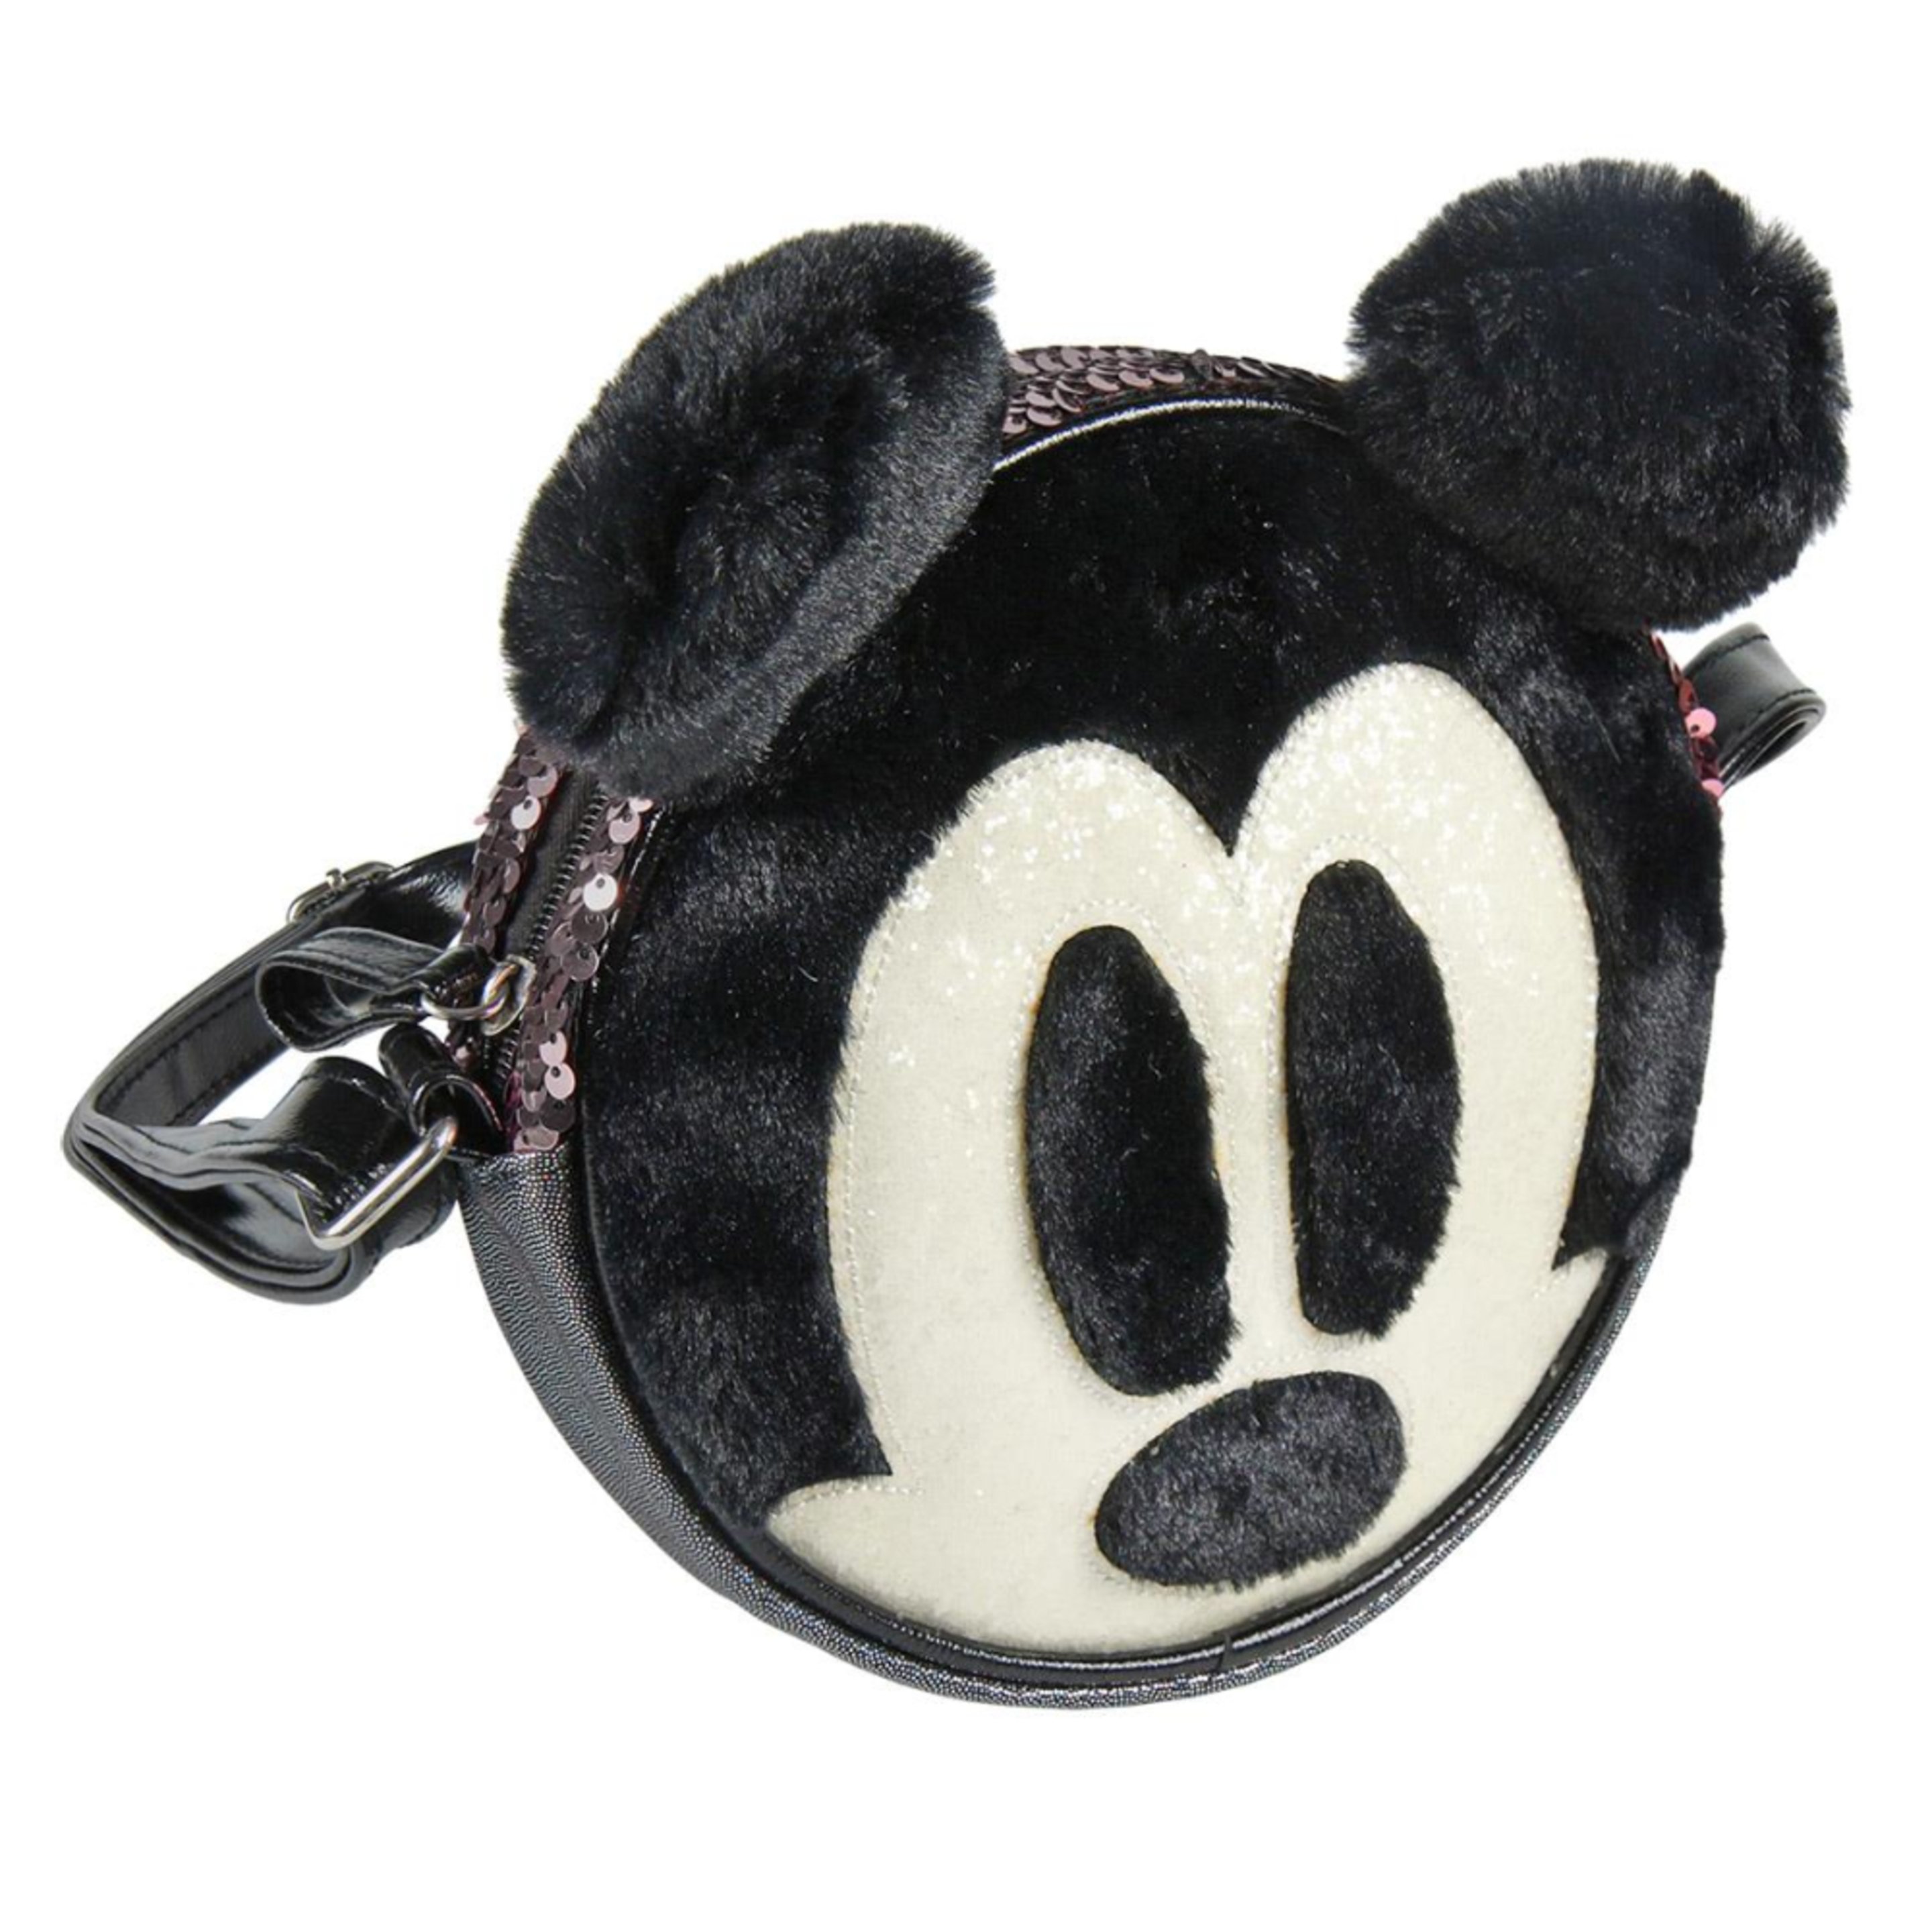 Mickey Mouse Band Bag